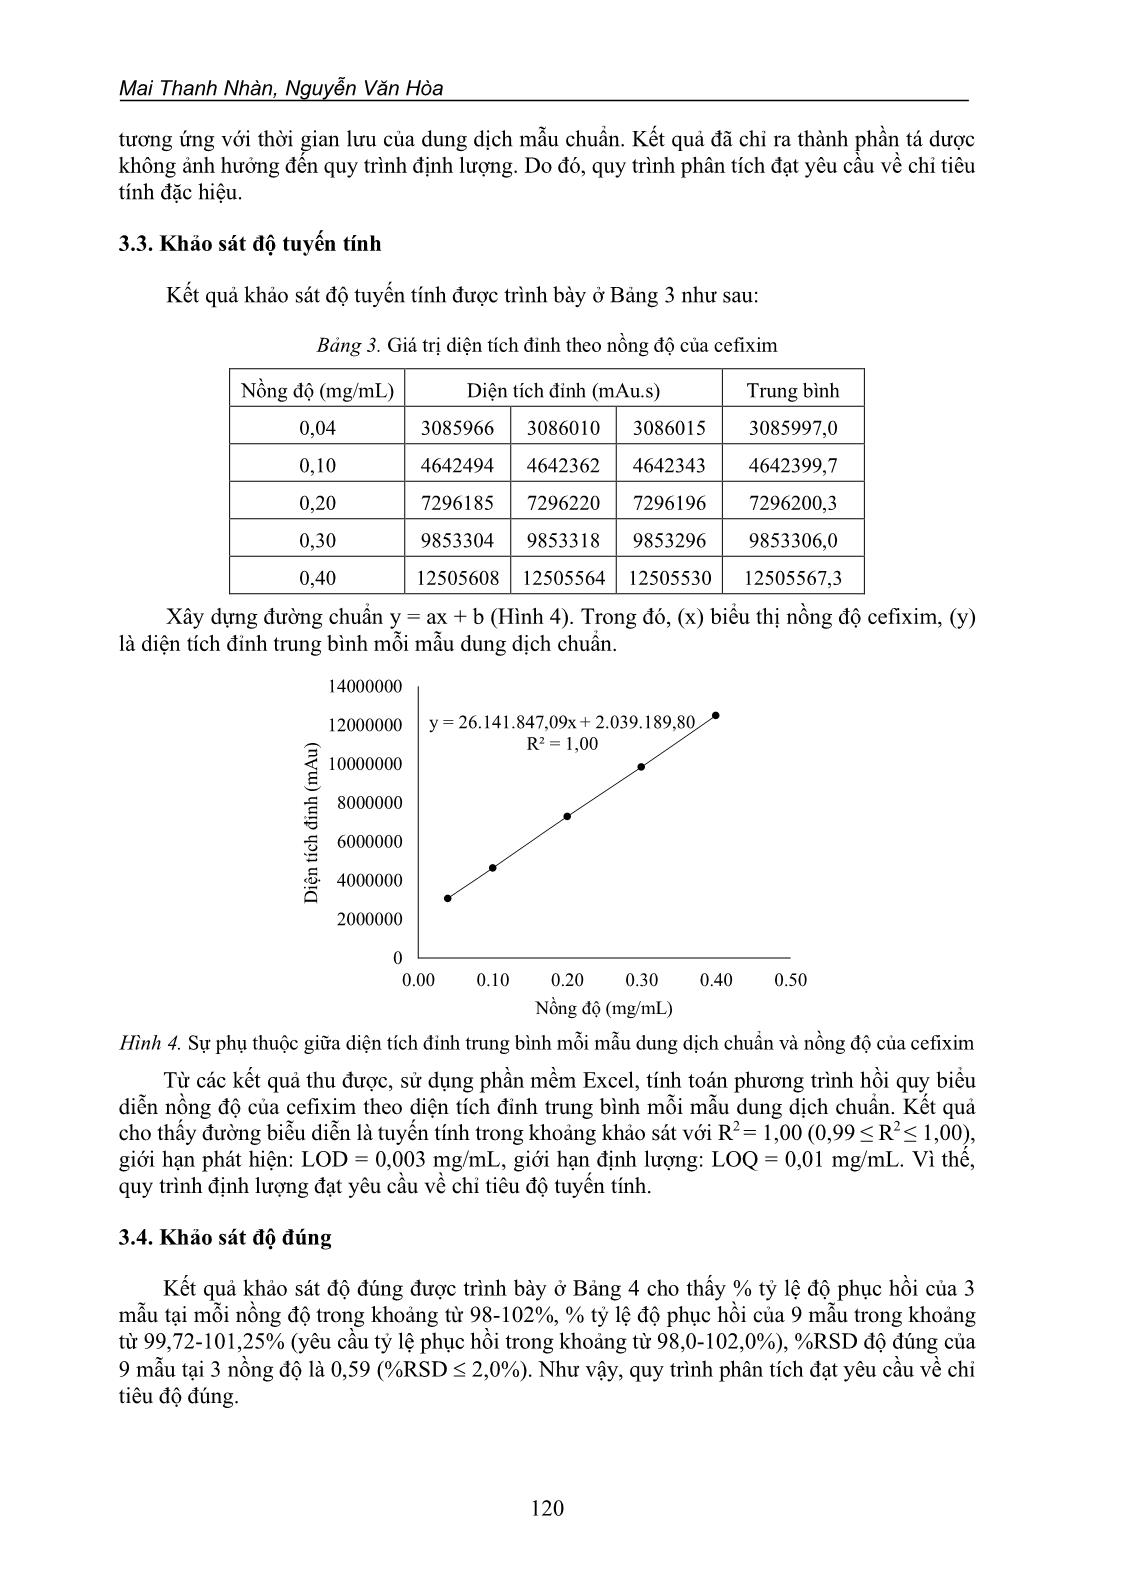 Xây dựng và thẩm định quy trình phân tích định lượng viên nang cứng cefixim 100 MG bằng phương pháp sắc ký lỏng hiệu năng cao (HPLC) trang 7